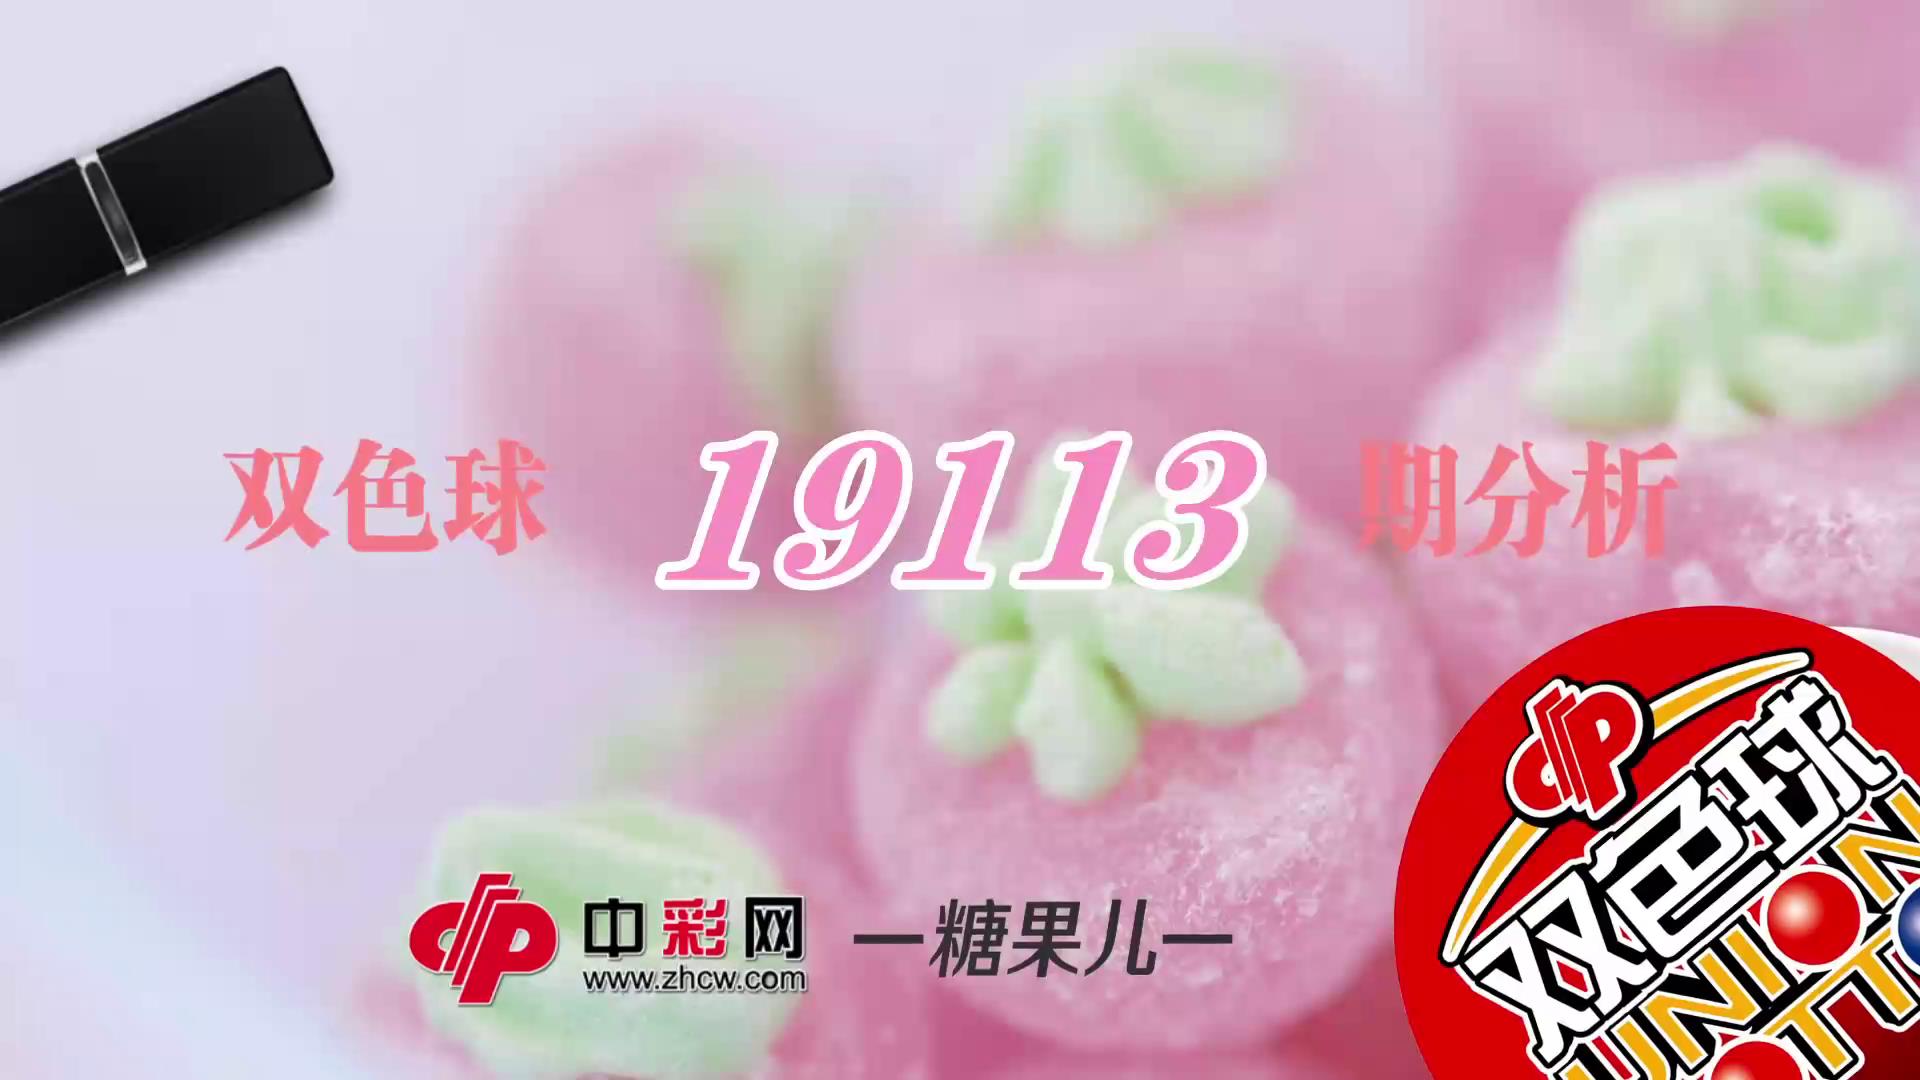 【中彩视频】糖果儿双色球第19113期